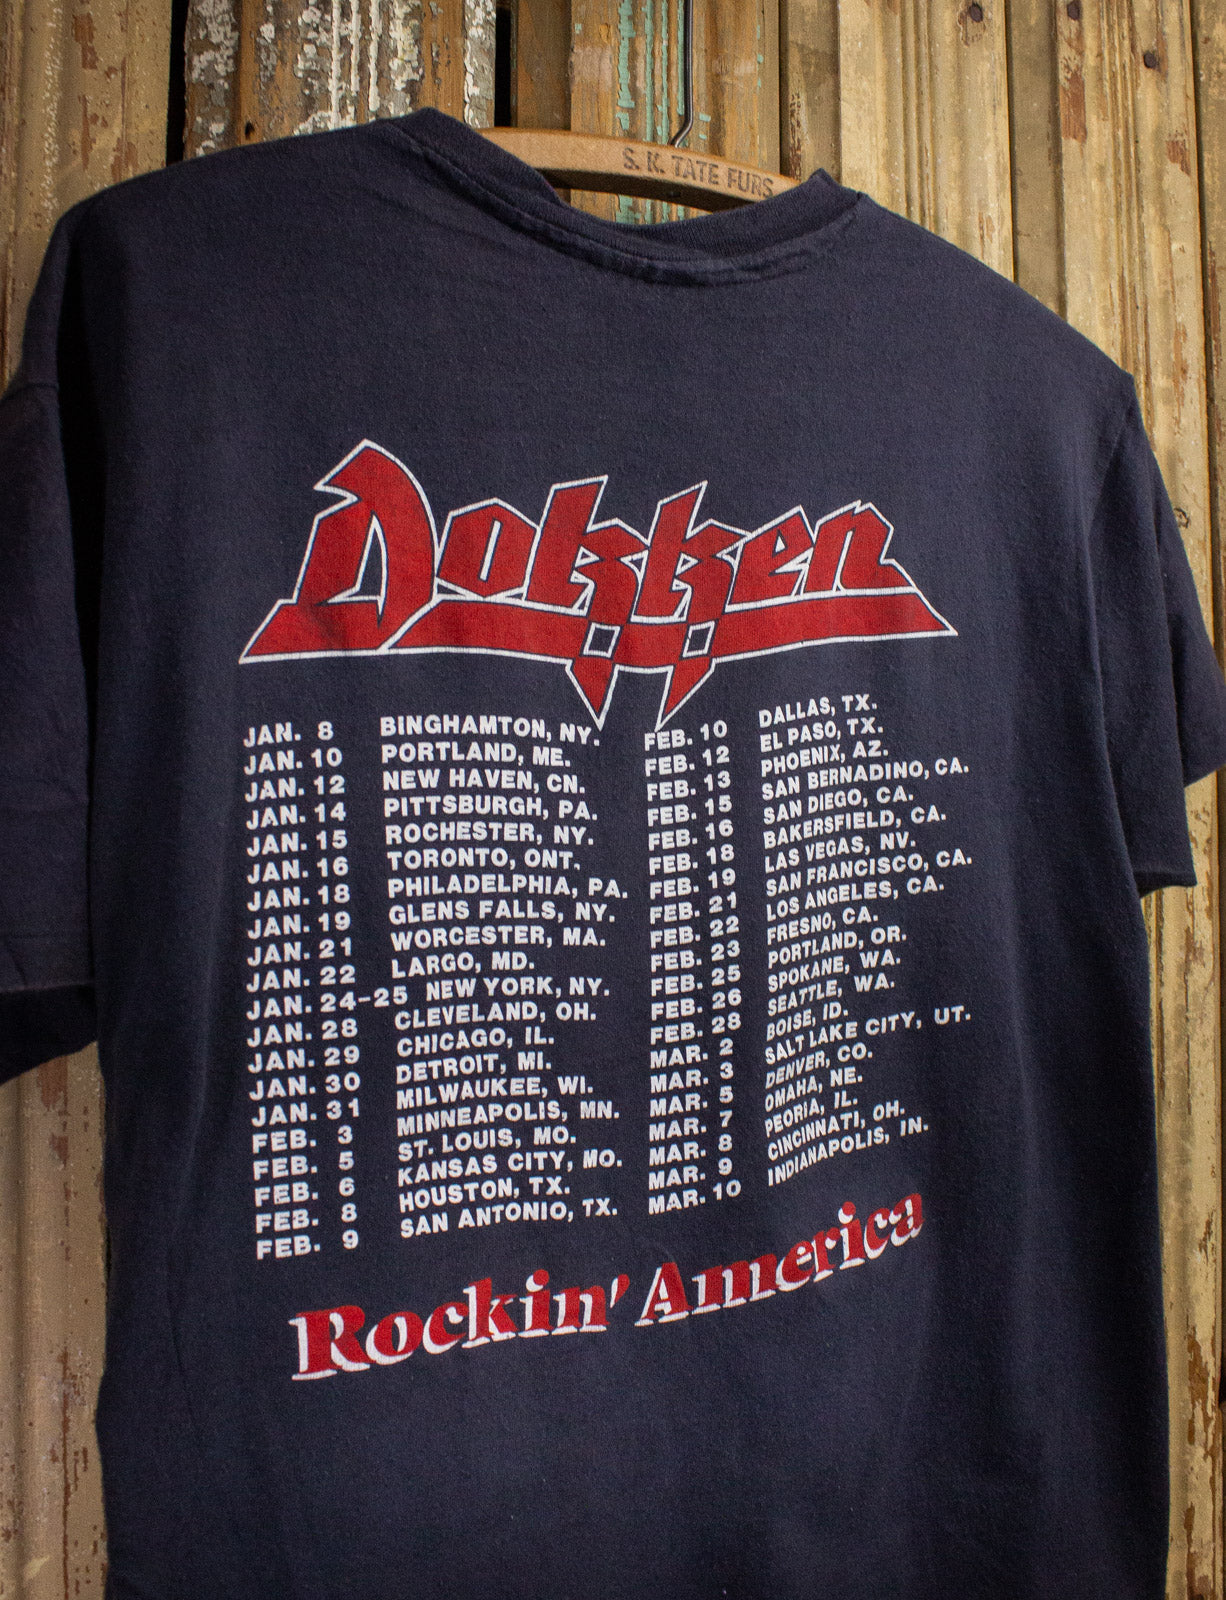 Vintage Dokken Under Lock and Key Concert T Shirt 80s Black Large